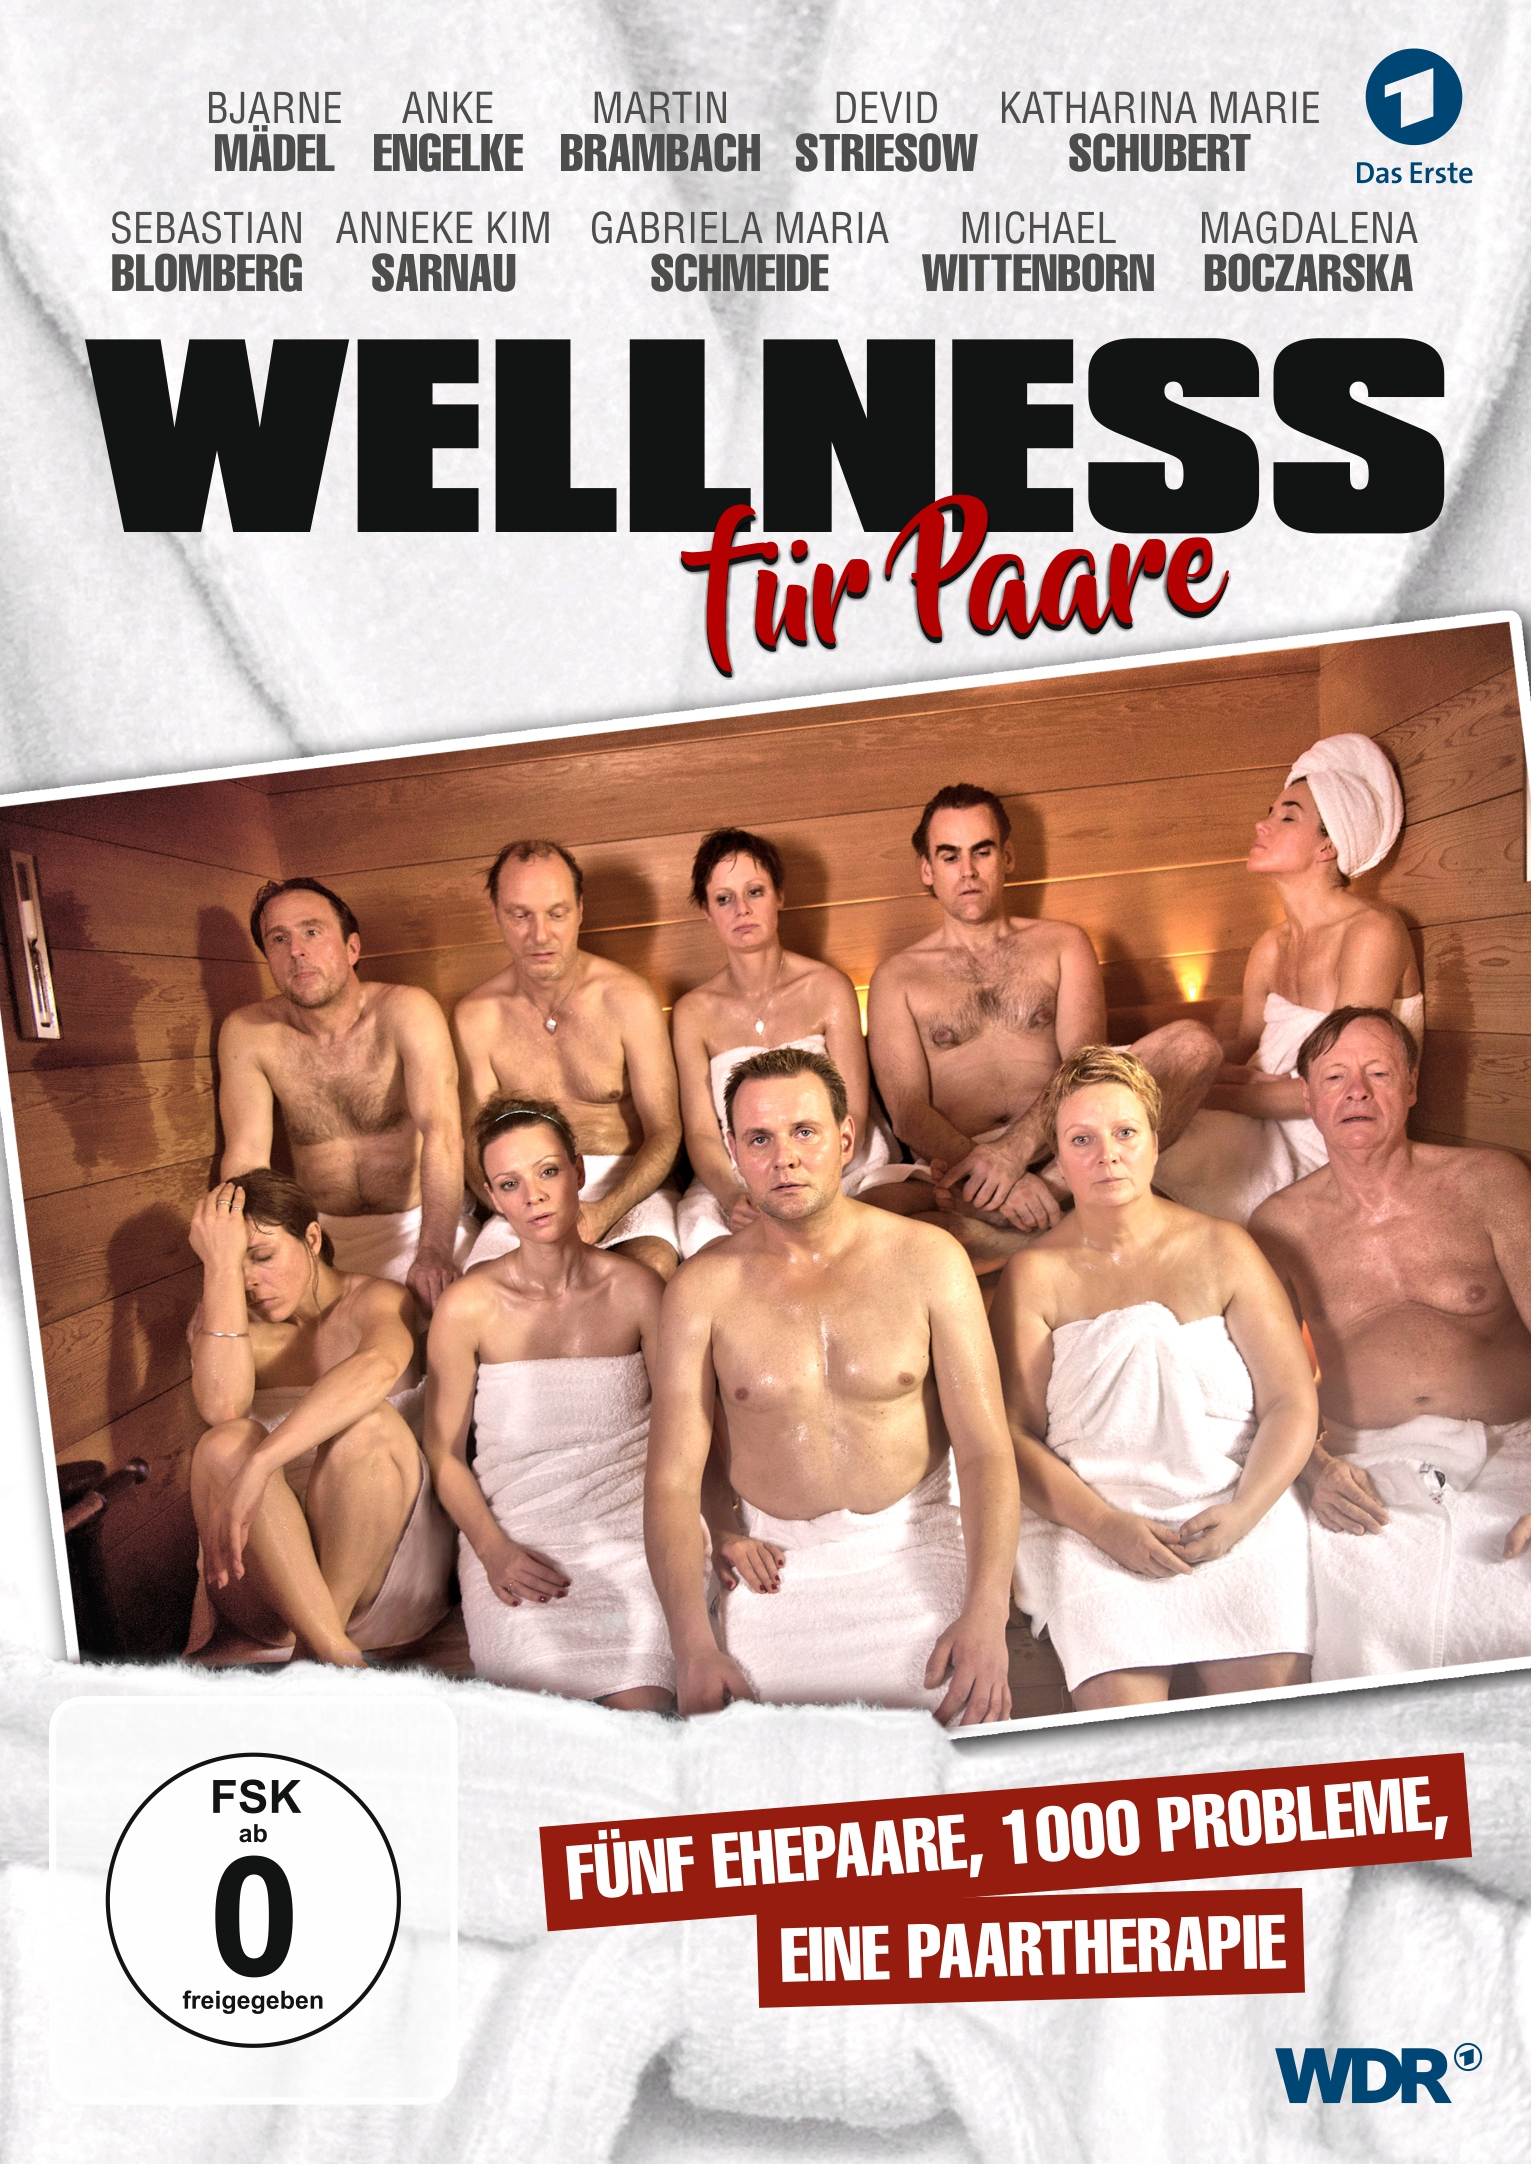 Für Paare Wellness DVD